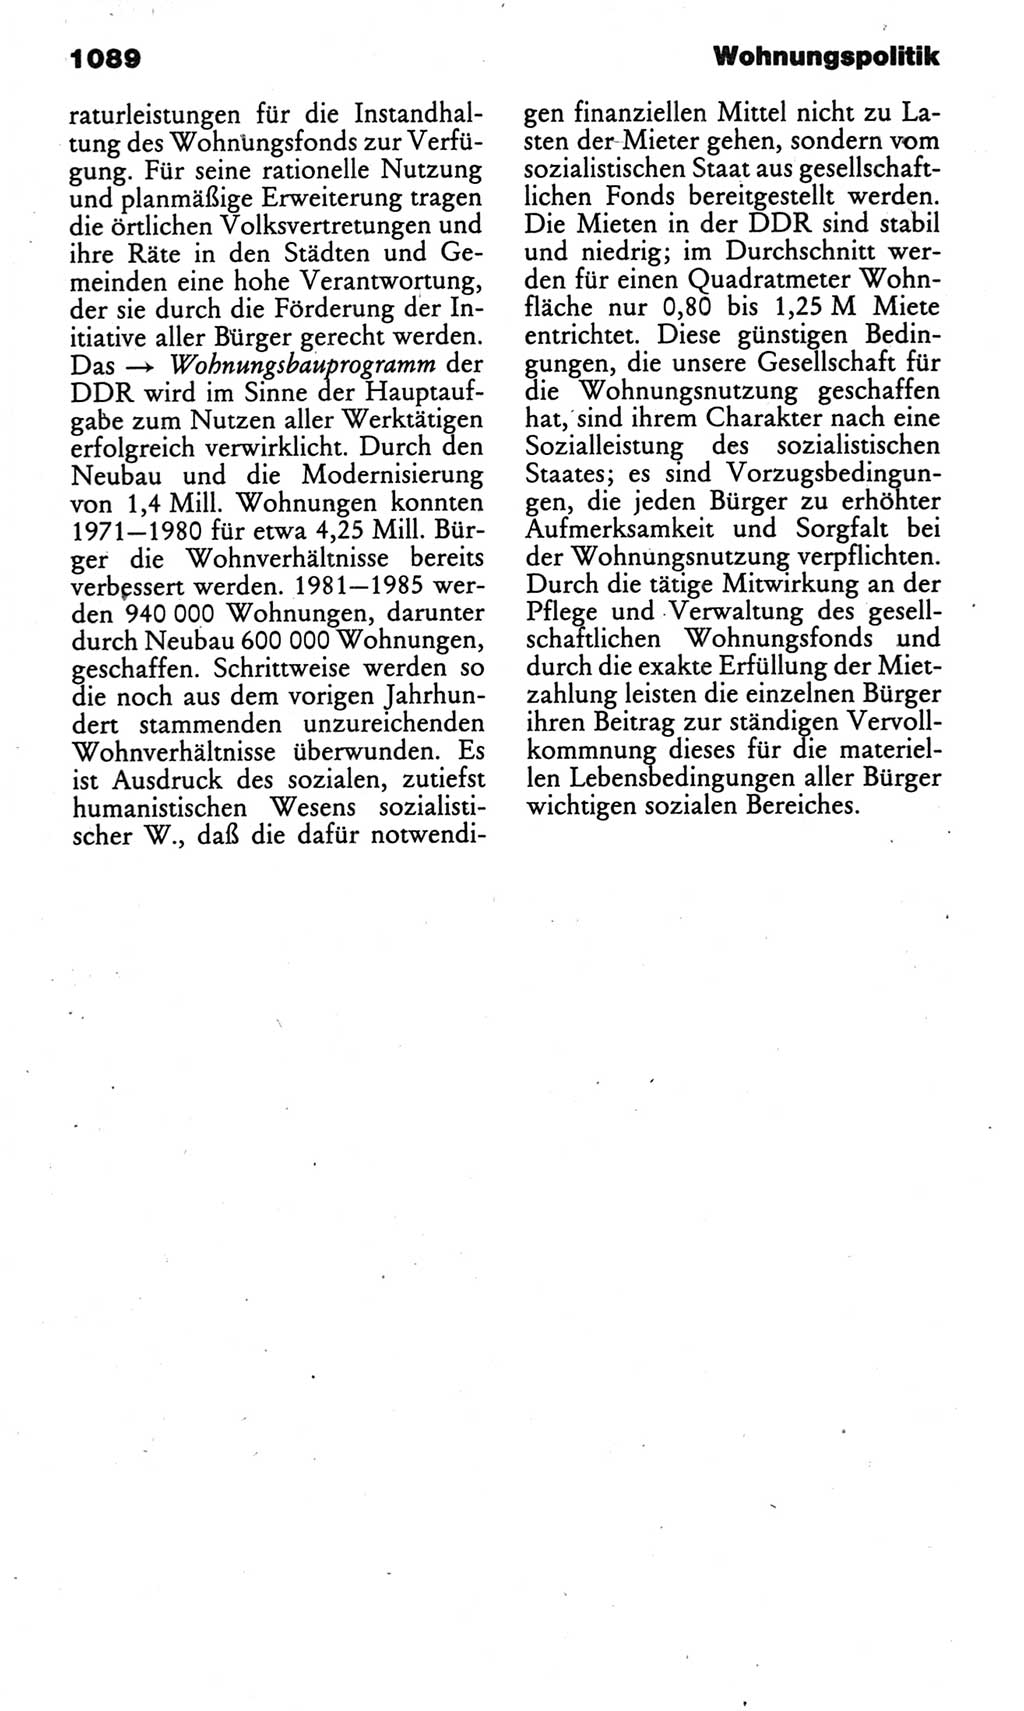 Kleines politisches Wörterbuch [Deutsche Demokratische Republik (DDR)] 1985, Seite 1089 (Kl. pol. Wb. DDR 1985, S. 1089)